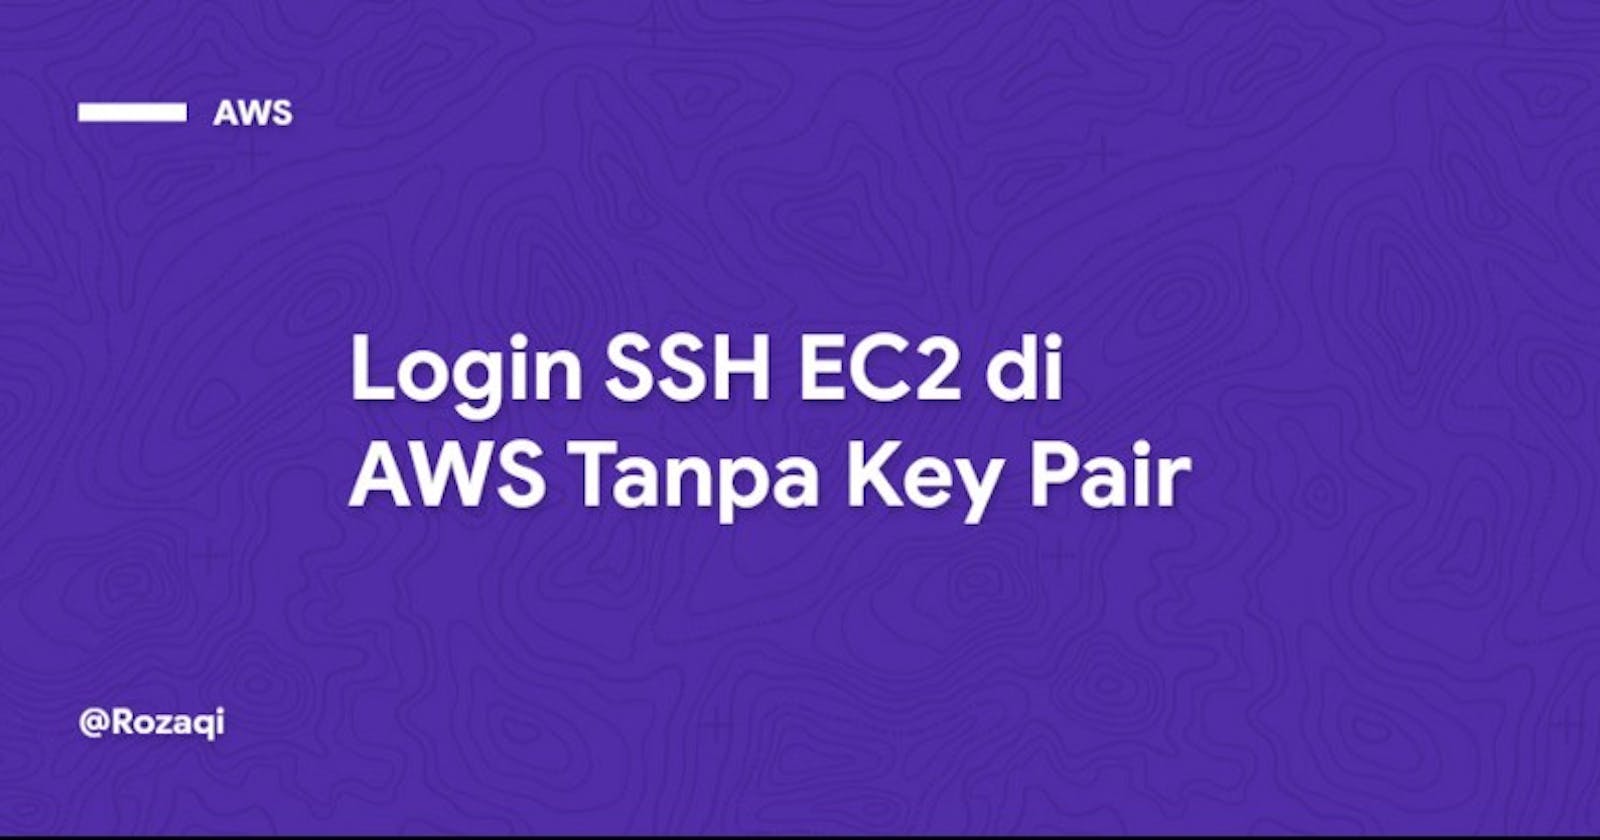 Login SSH EC2 di AWS Tanpa Key Pair [AWS] #2